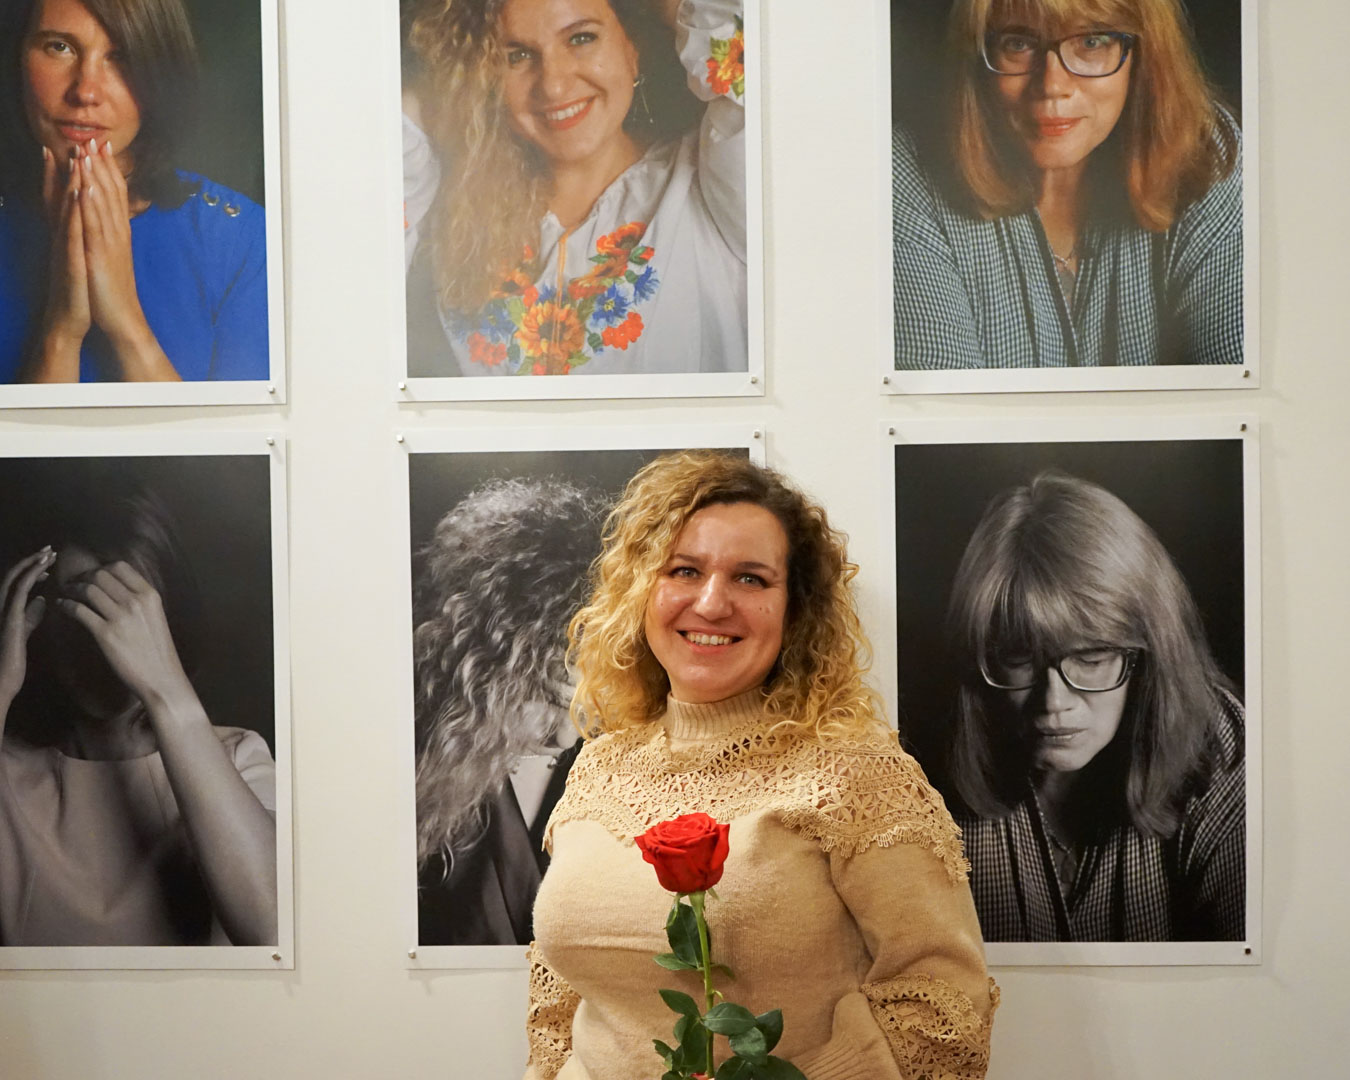 Portret kobiety w kręconych, blond włosach na tle prezentowanych na ścianie innych portretów kobiet. W dłoni kobieta trzyma czerwoną różę.